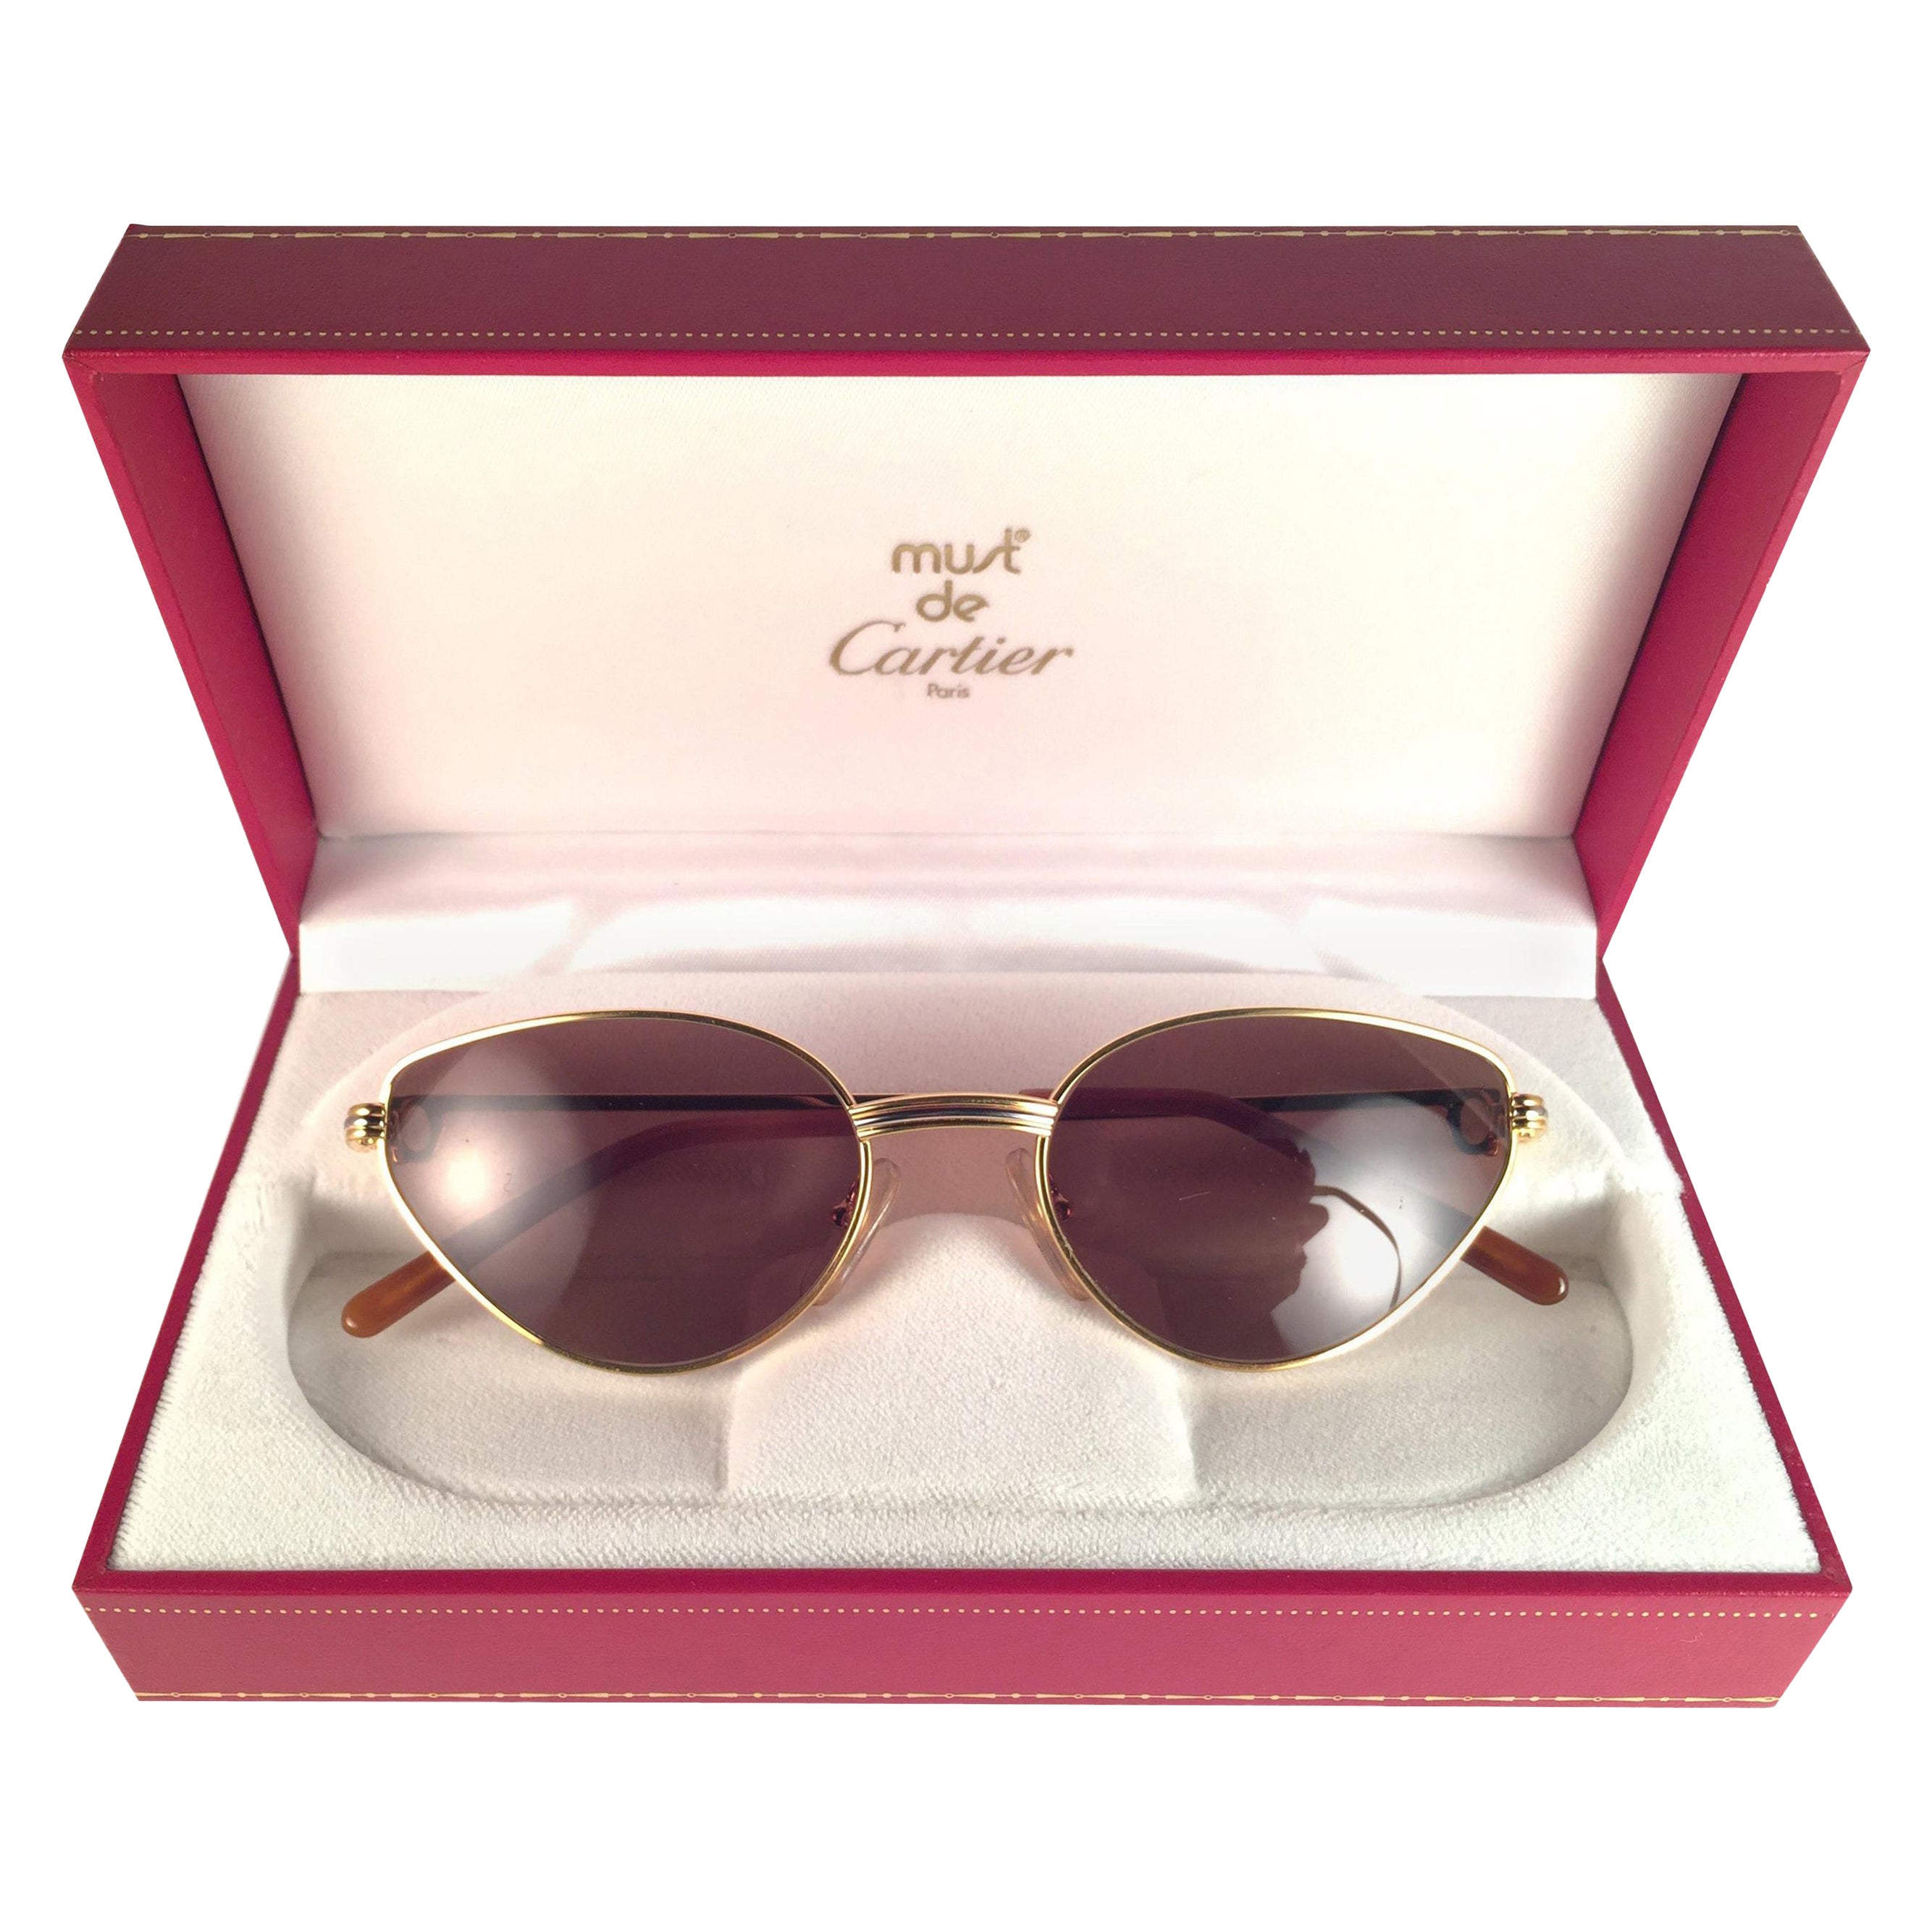 Neu Cartier Rivoli Vendome 56mm Katzenauge-Sonnenbrille 18k schwer versilbert Frankreich